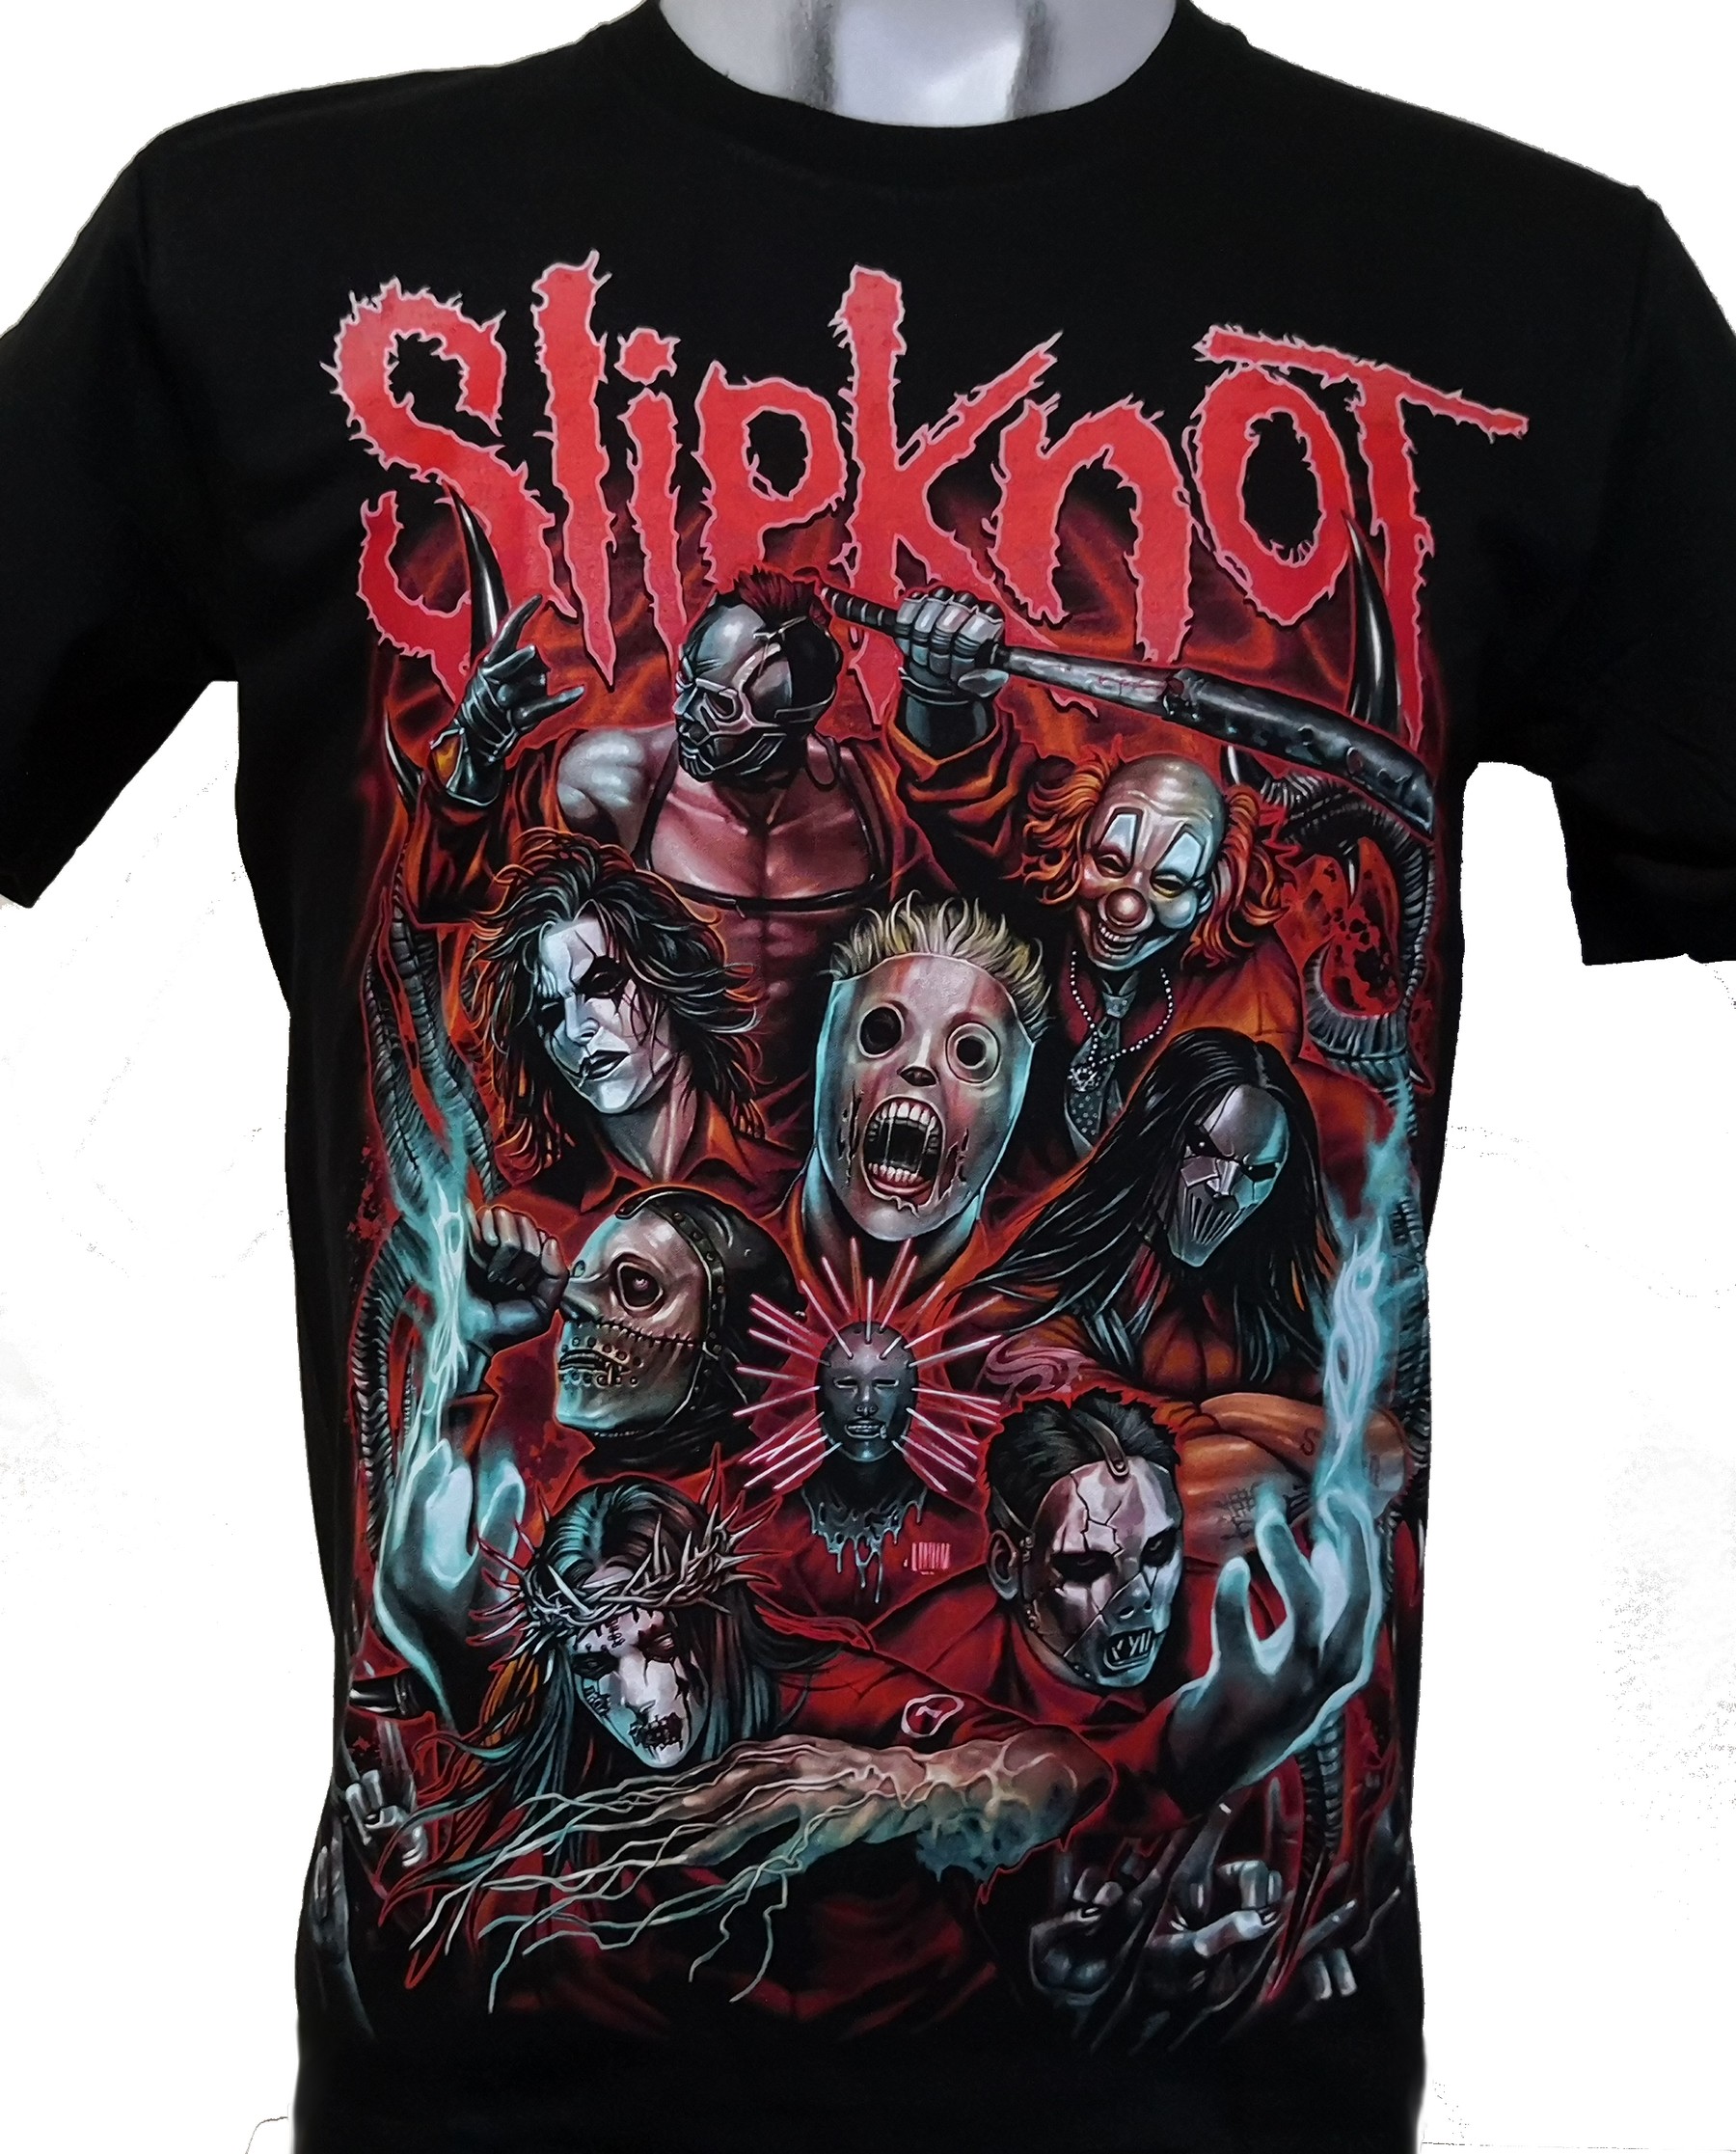 Slipknot 'Infected Goat' Kids T-Shirt Black NEW & OFFICIAL!